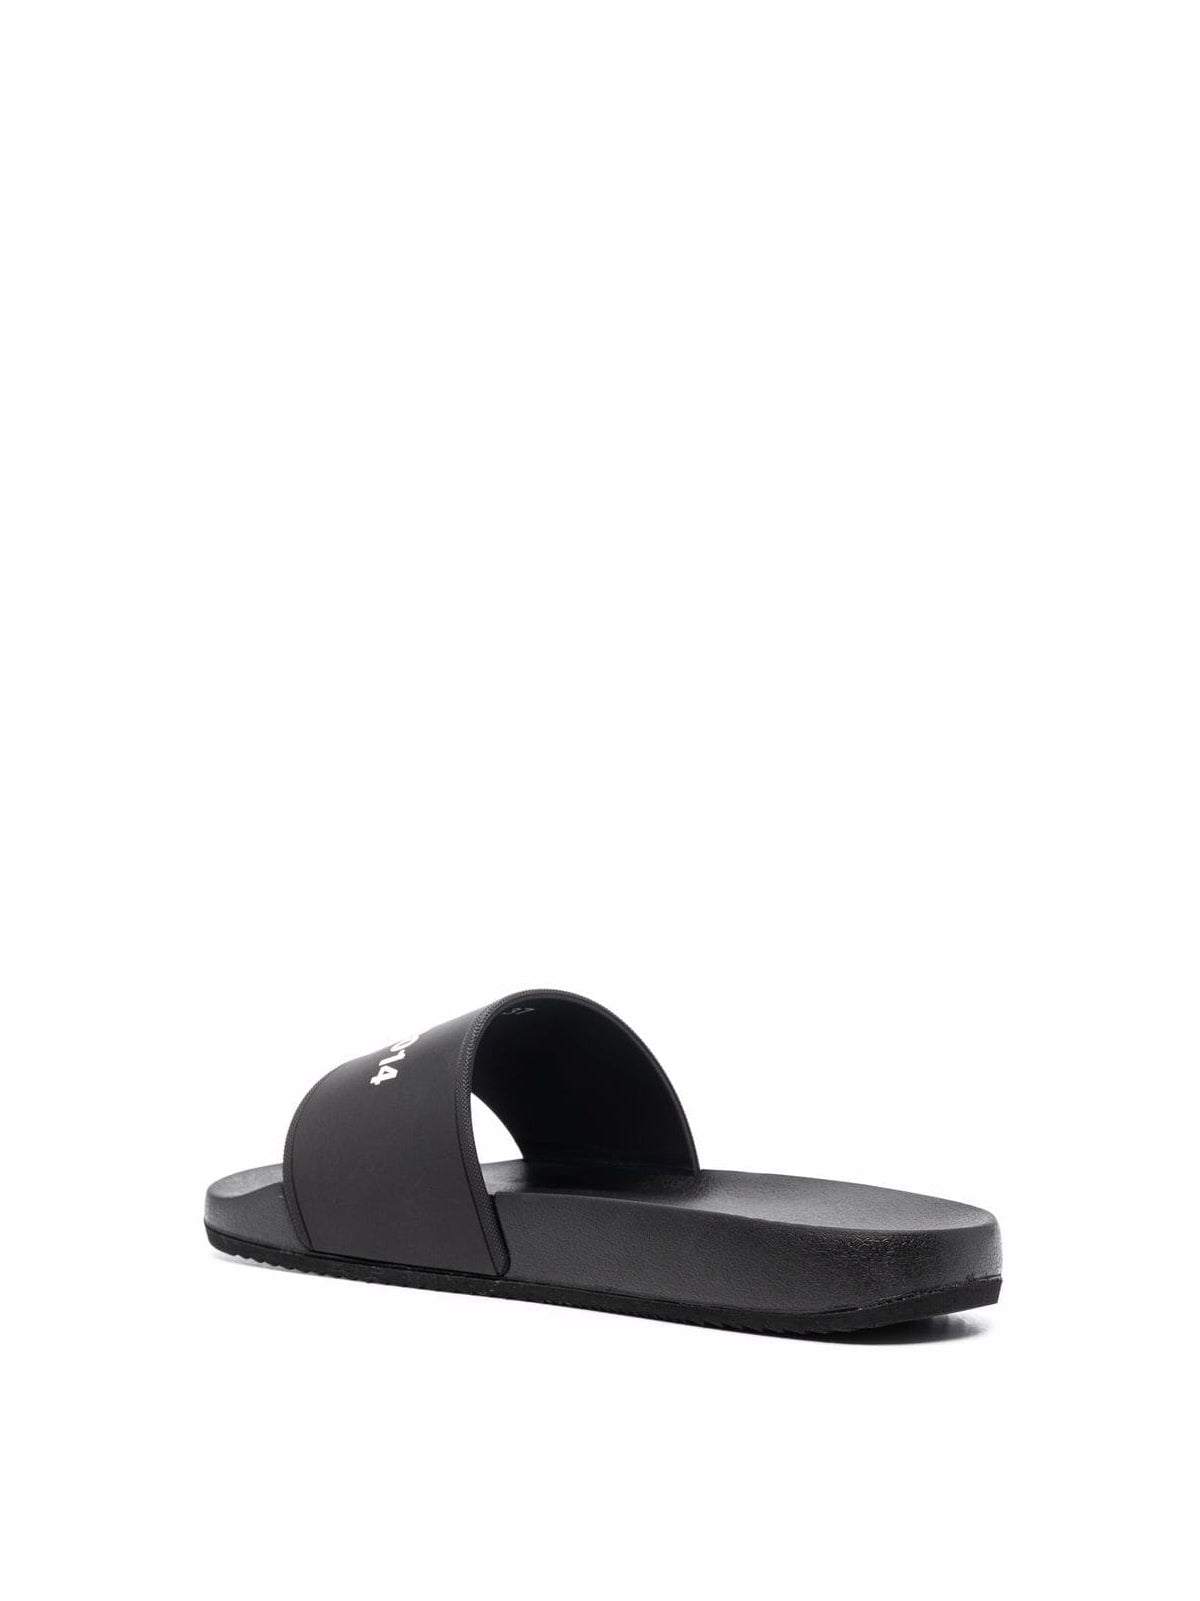 Axel Arigato-OUTLET-SALE-Logo Pool Slides Sandals-ARCHIVIST